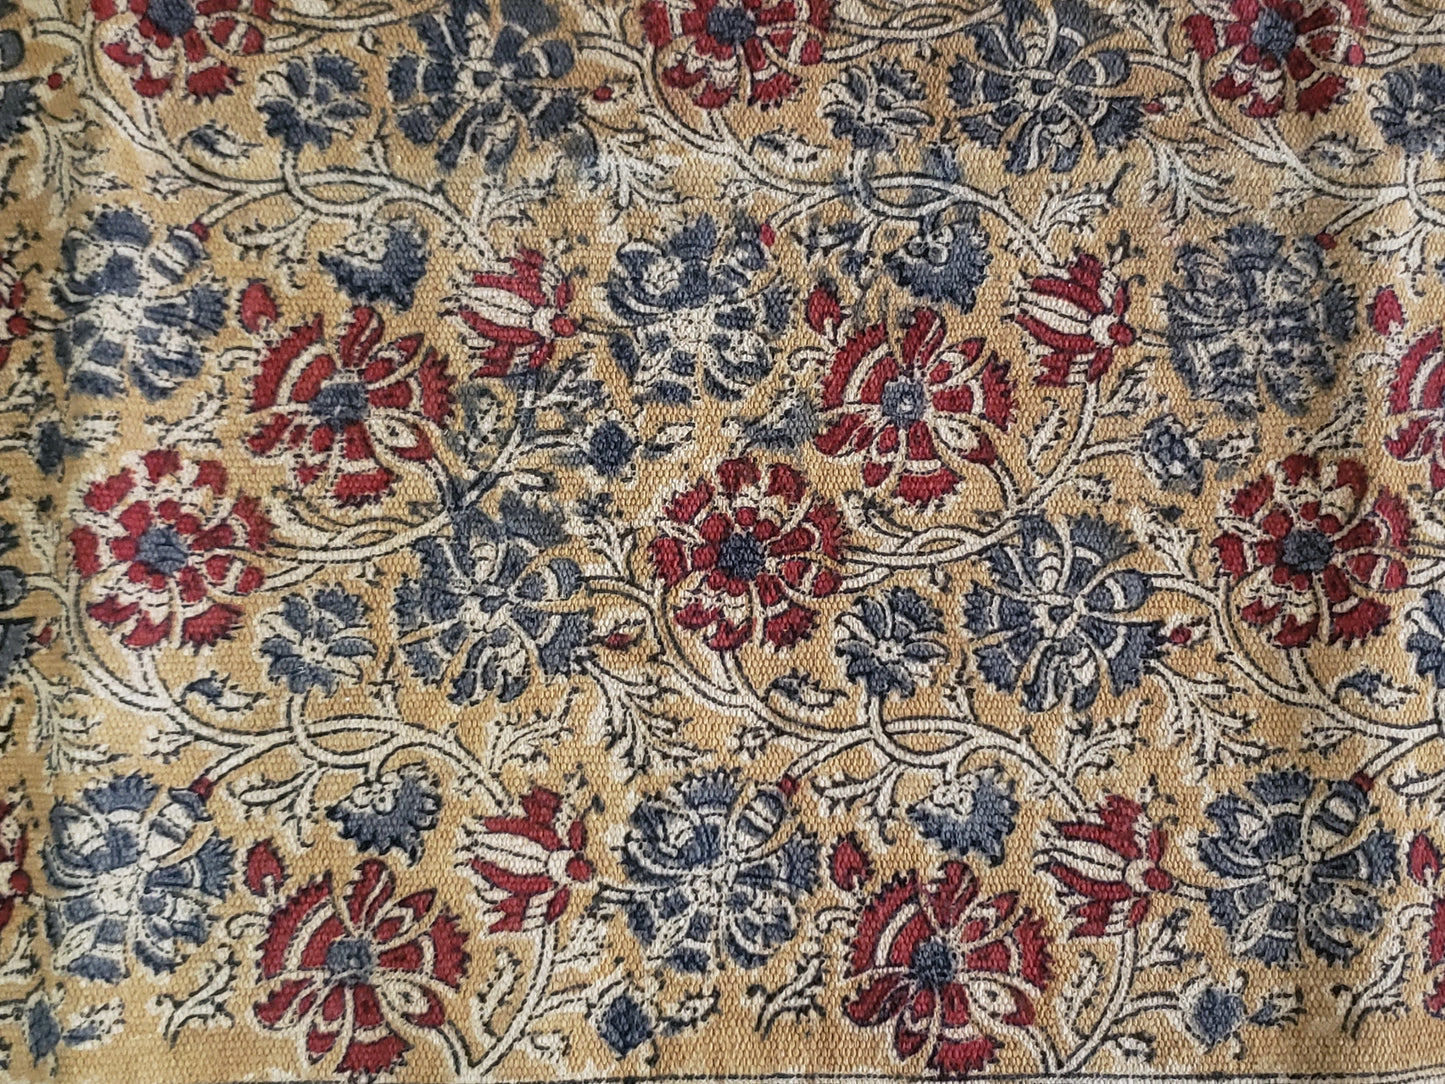 Detalle de tapete algodón estampado a mano con diseño tradicional Kalamkari, base ocre con diseño floral en tonos tierra. Hecho en la India.